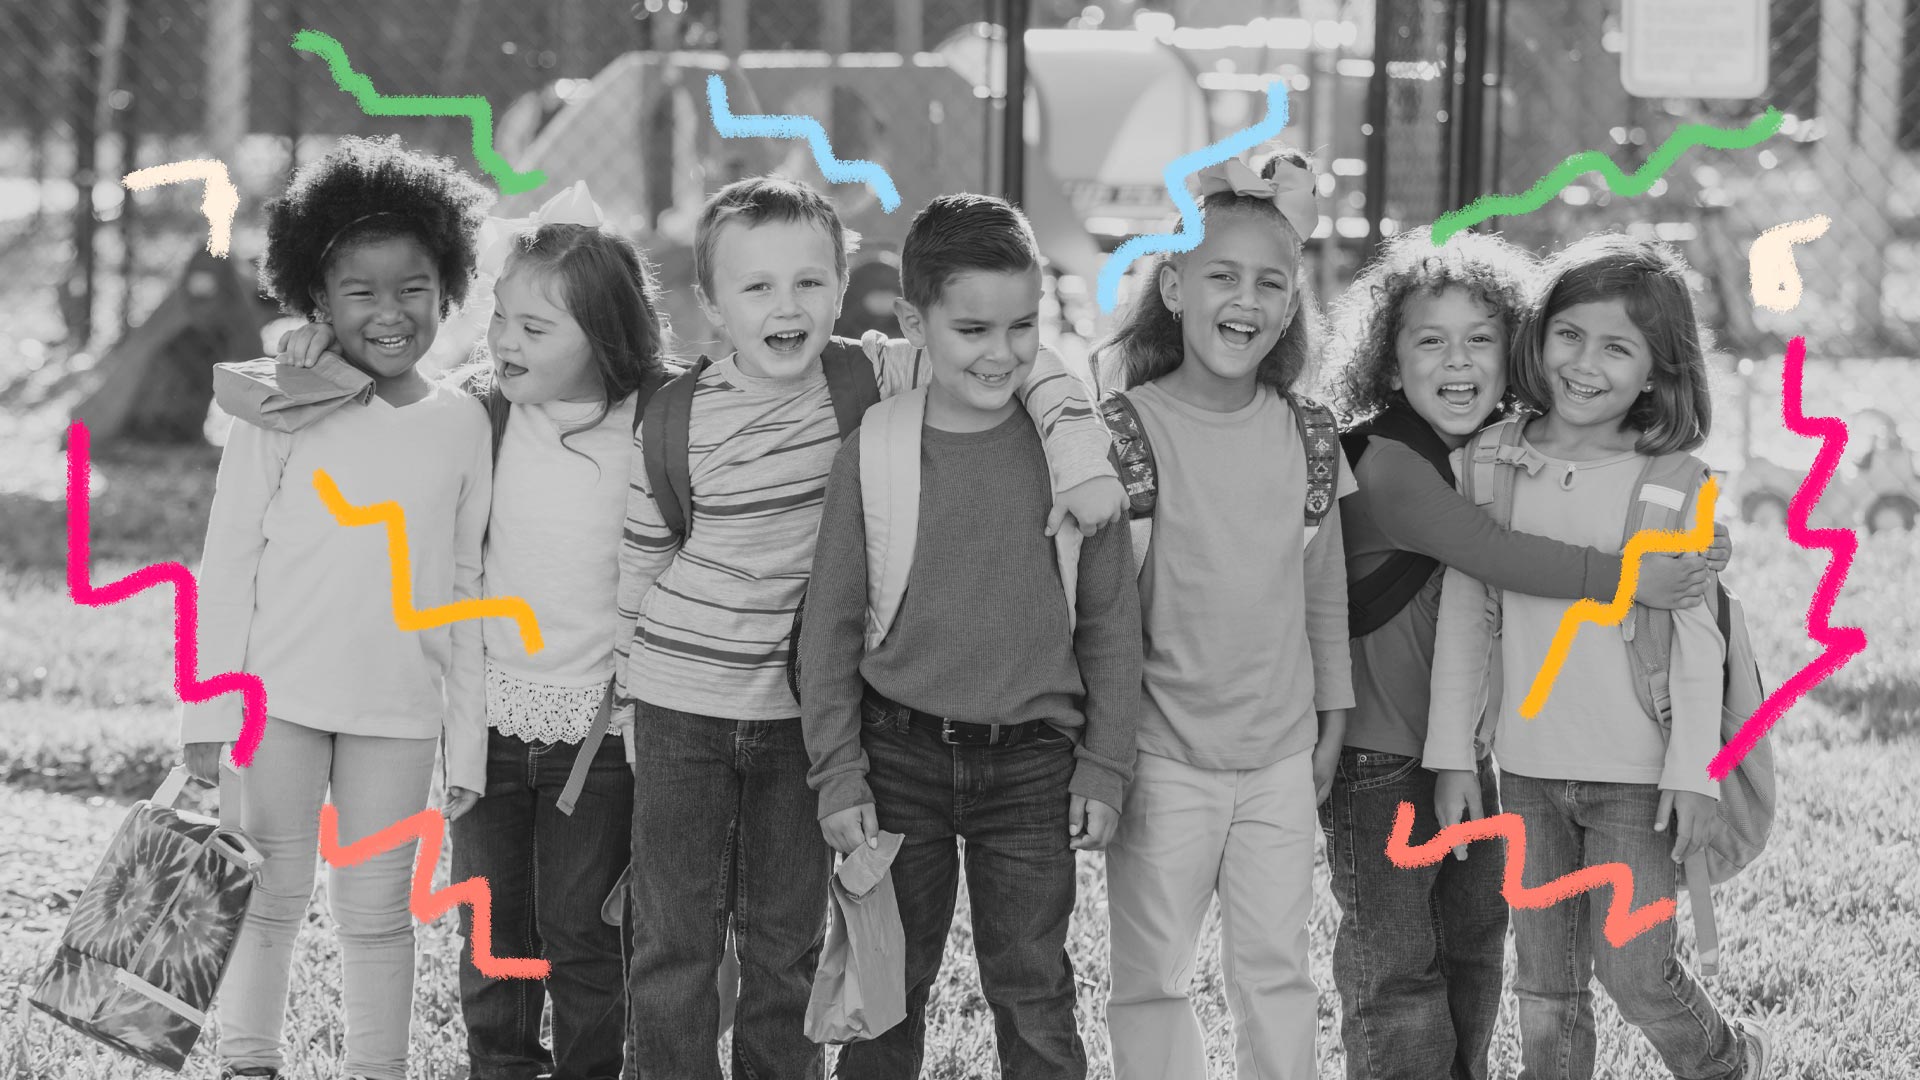 Um grupo de crianças estão em fila, um ao lado do outro, em uma imagem em preto e branco com intervenções coloridas